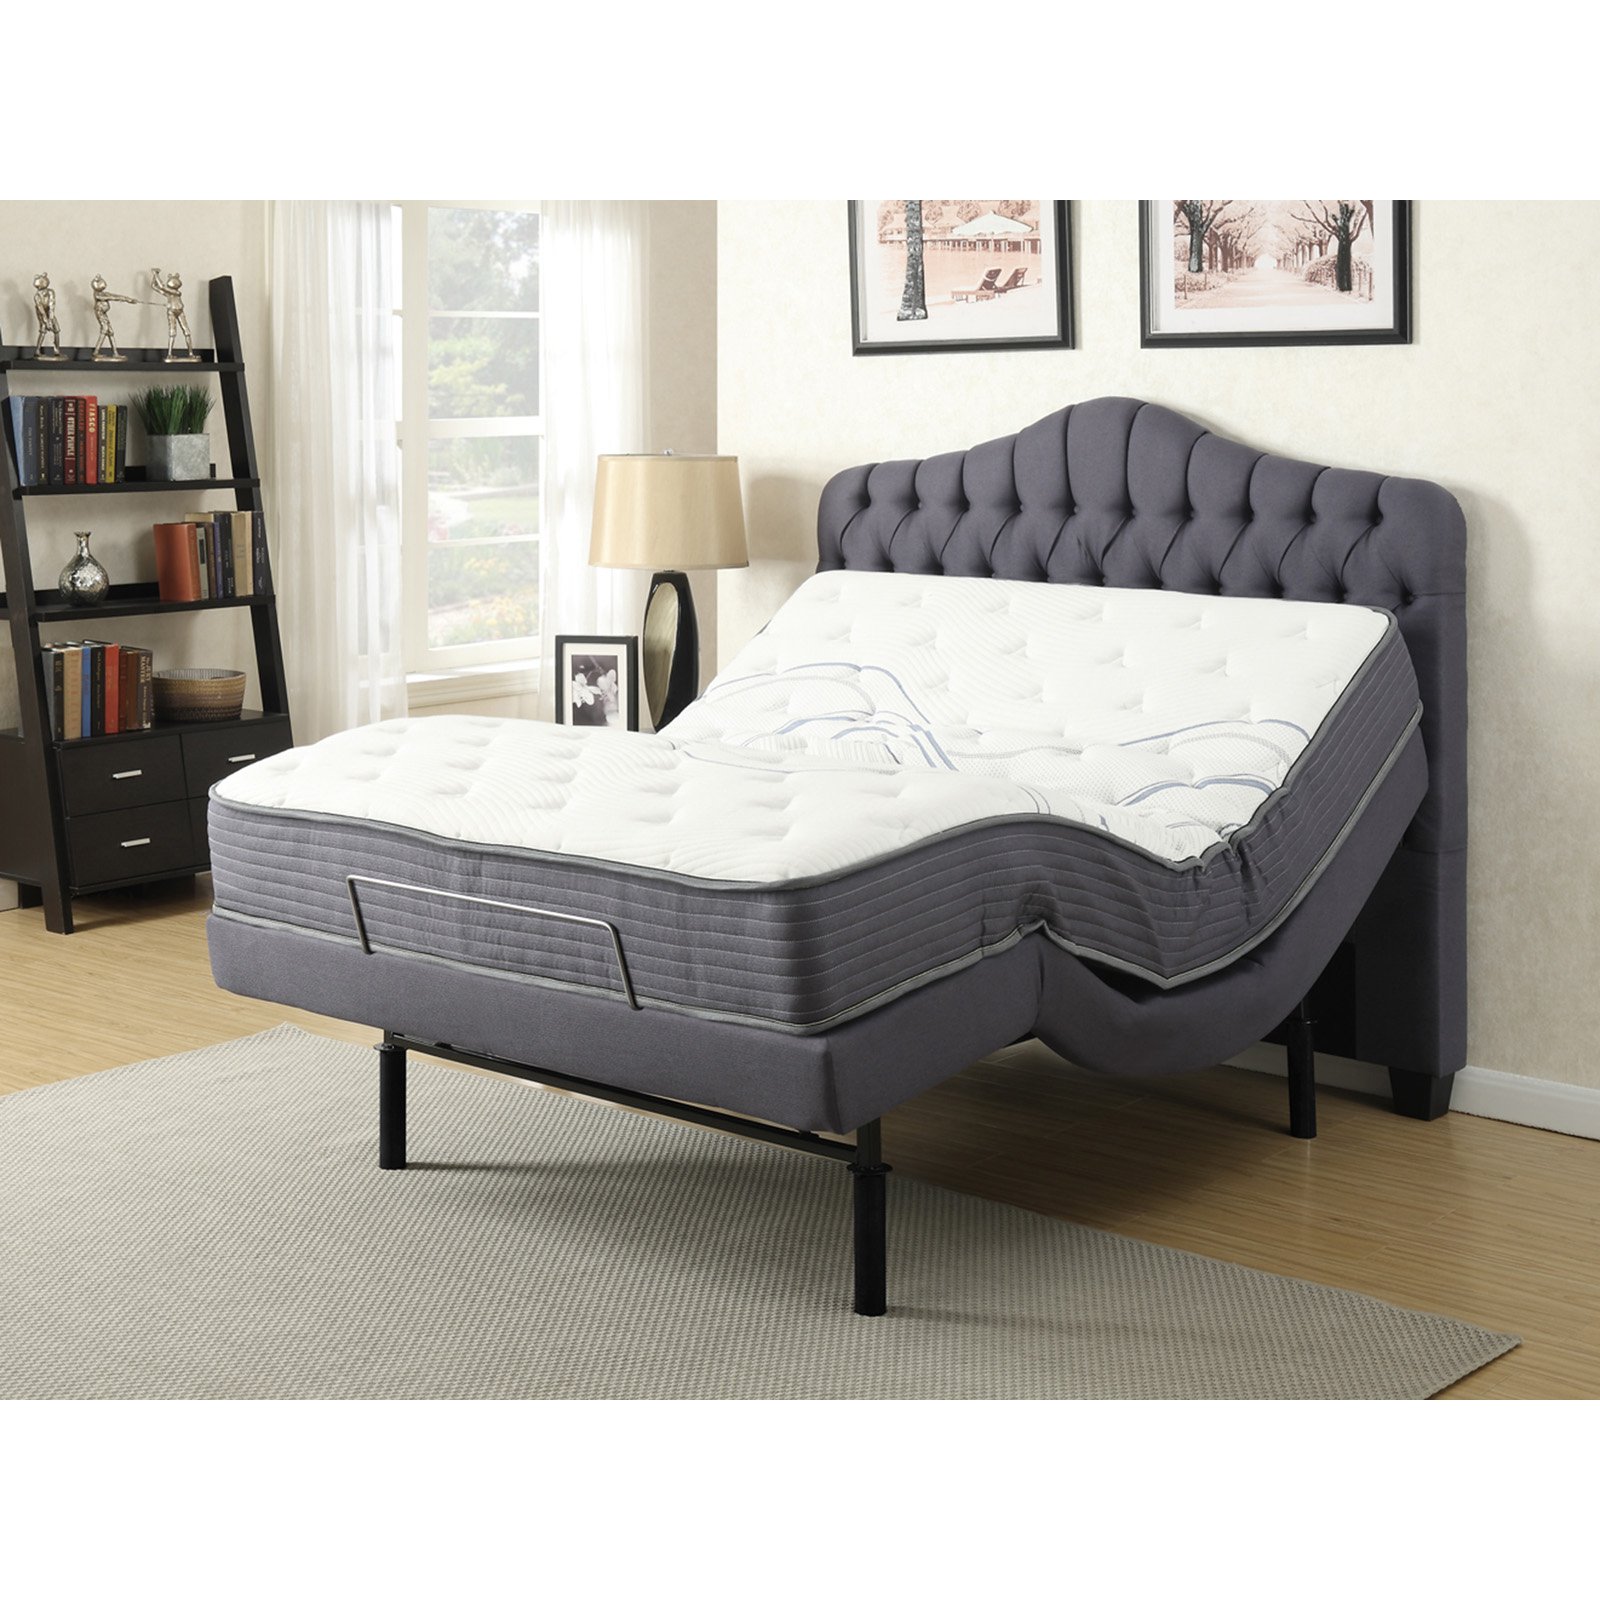 28412 Gemma Adjustable Bed, Grey - Queen